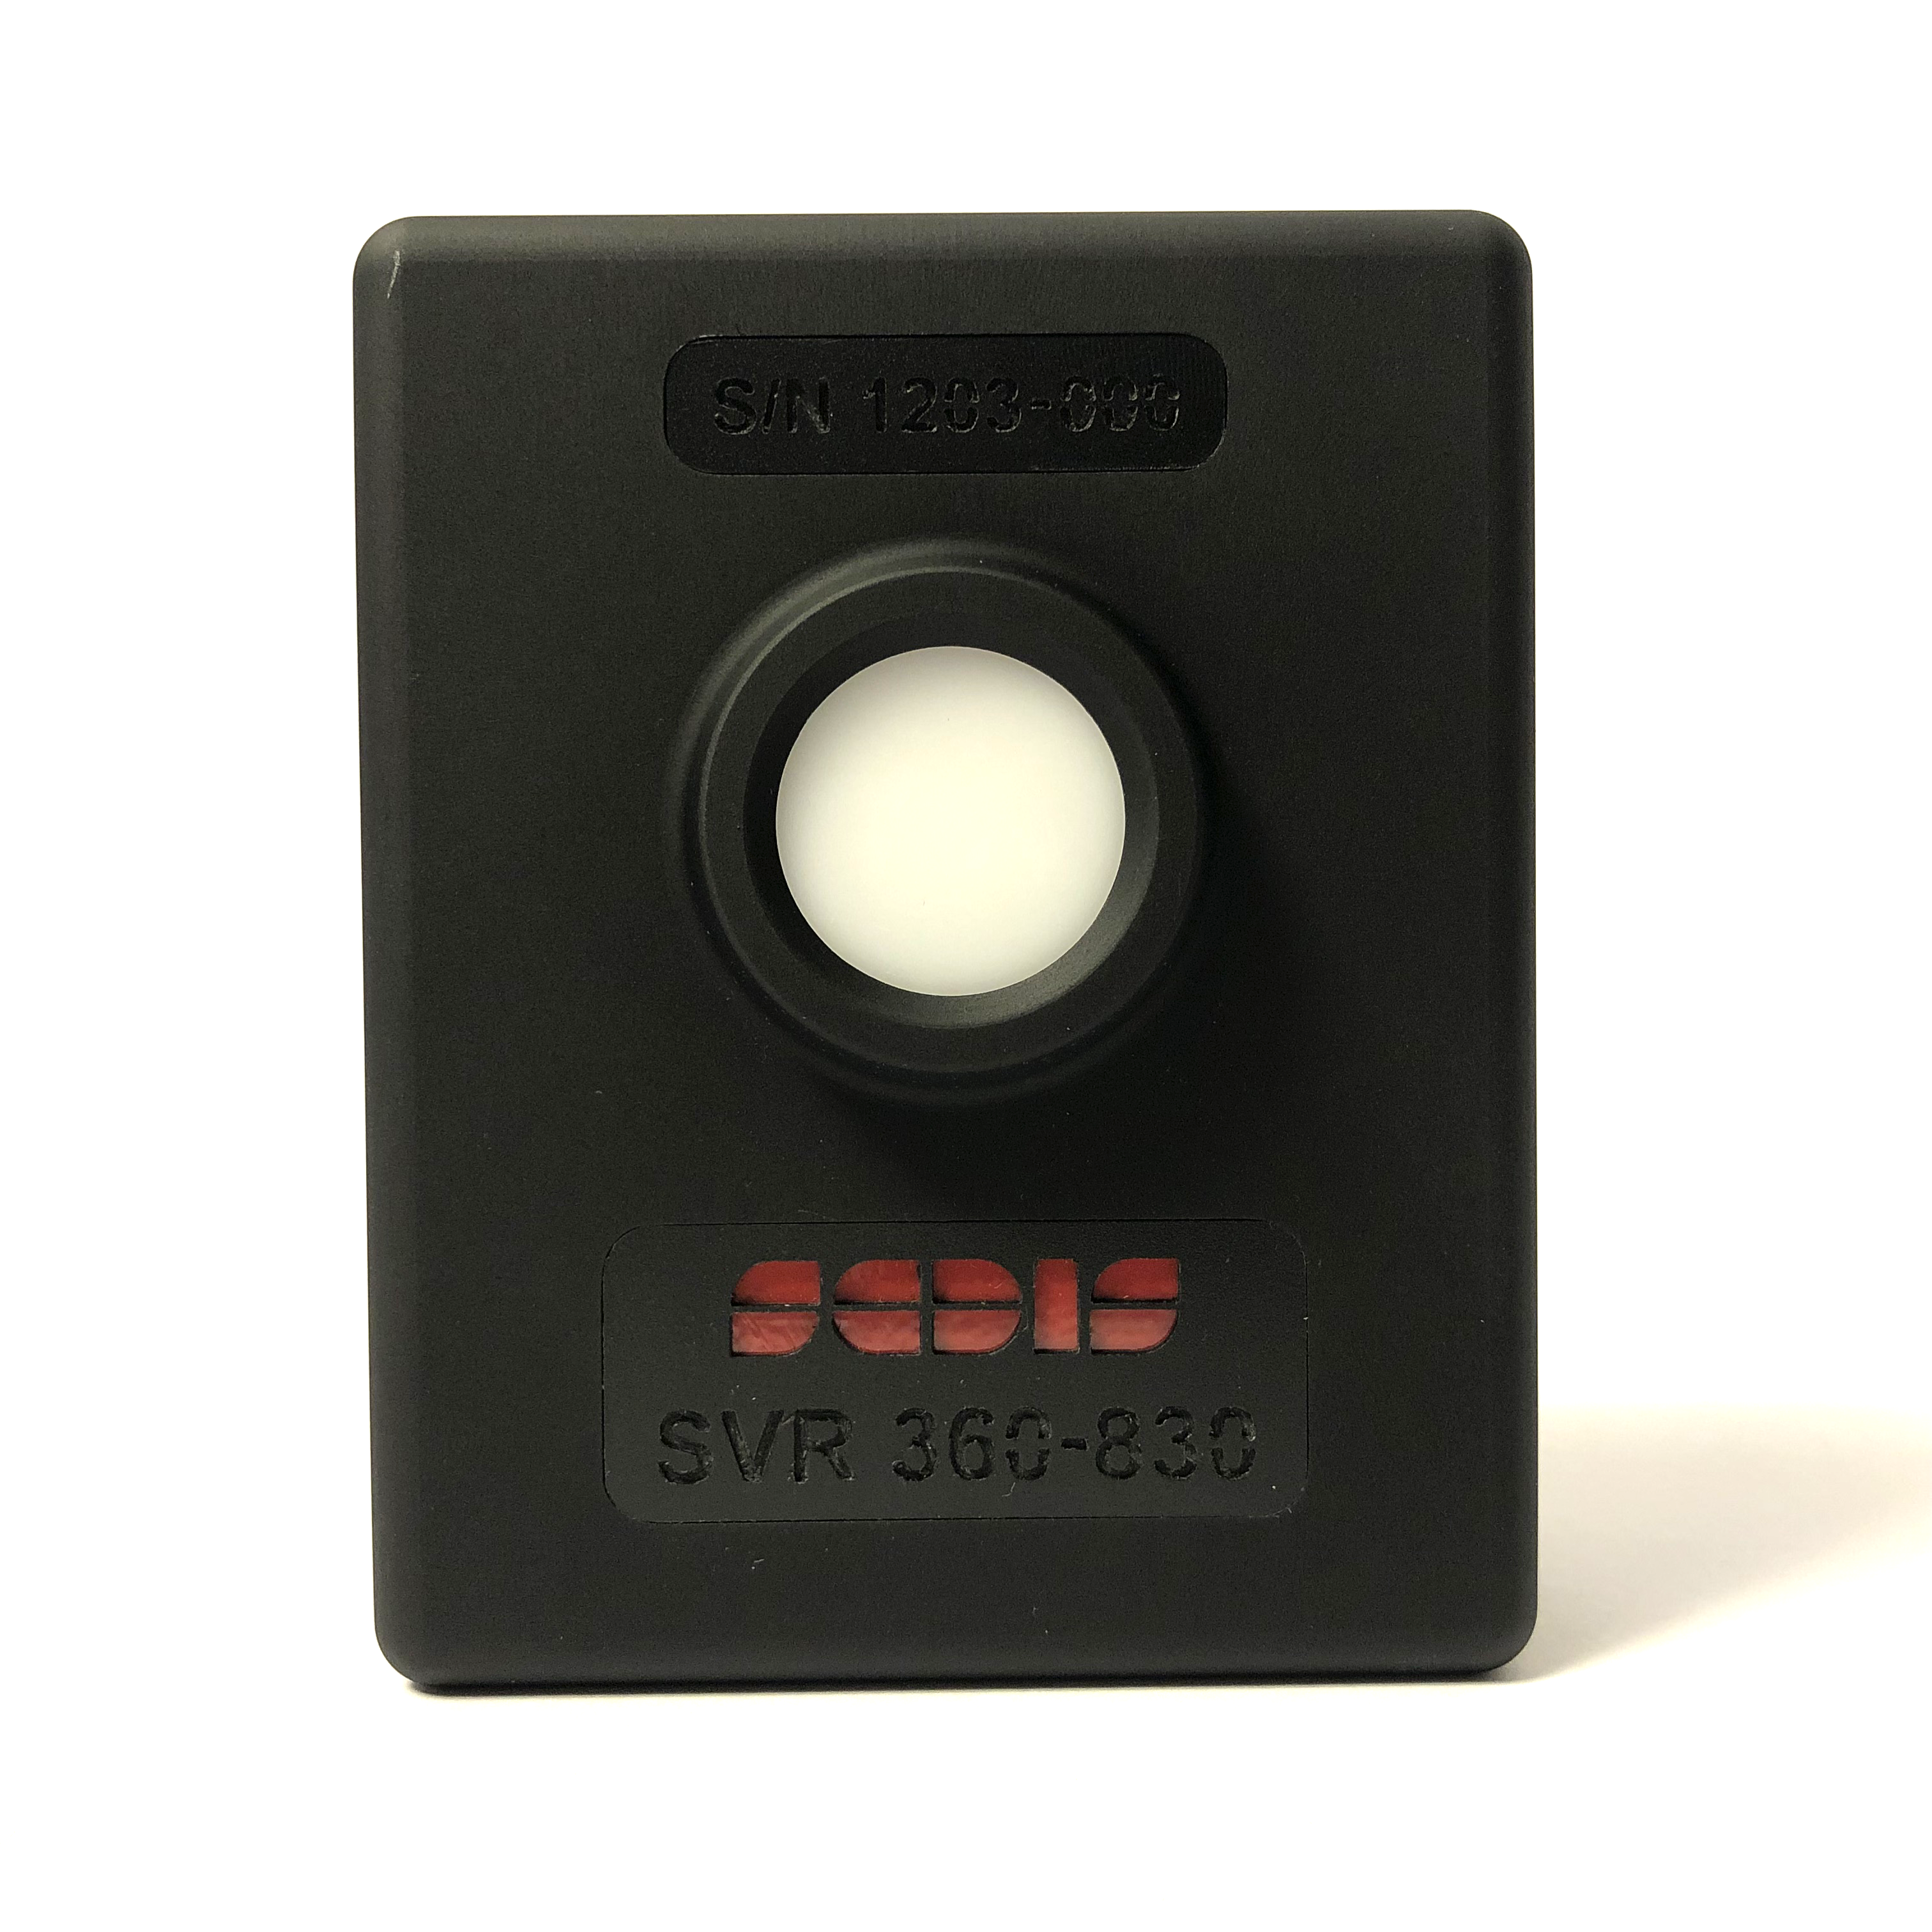 SVRG 36-83 spectrophotometer for goniophotometer